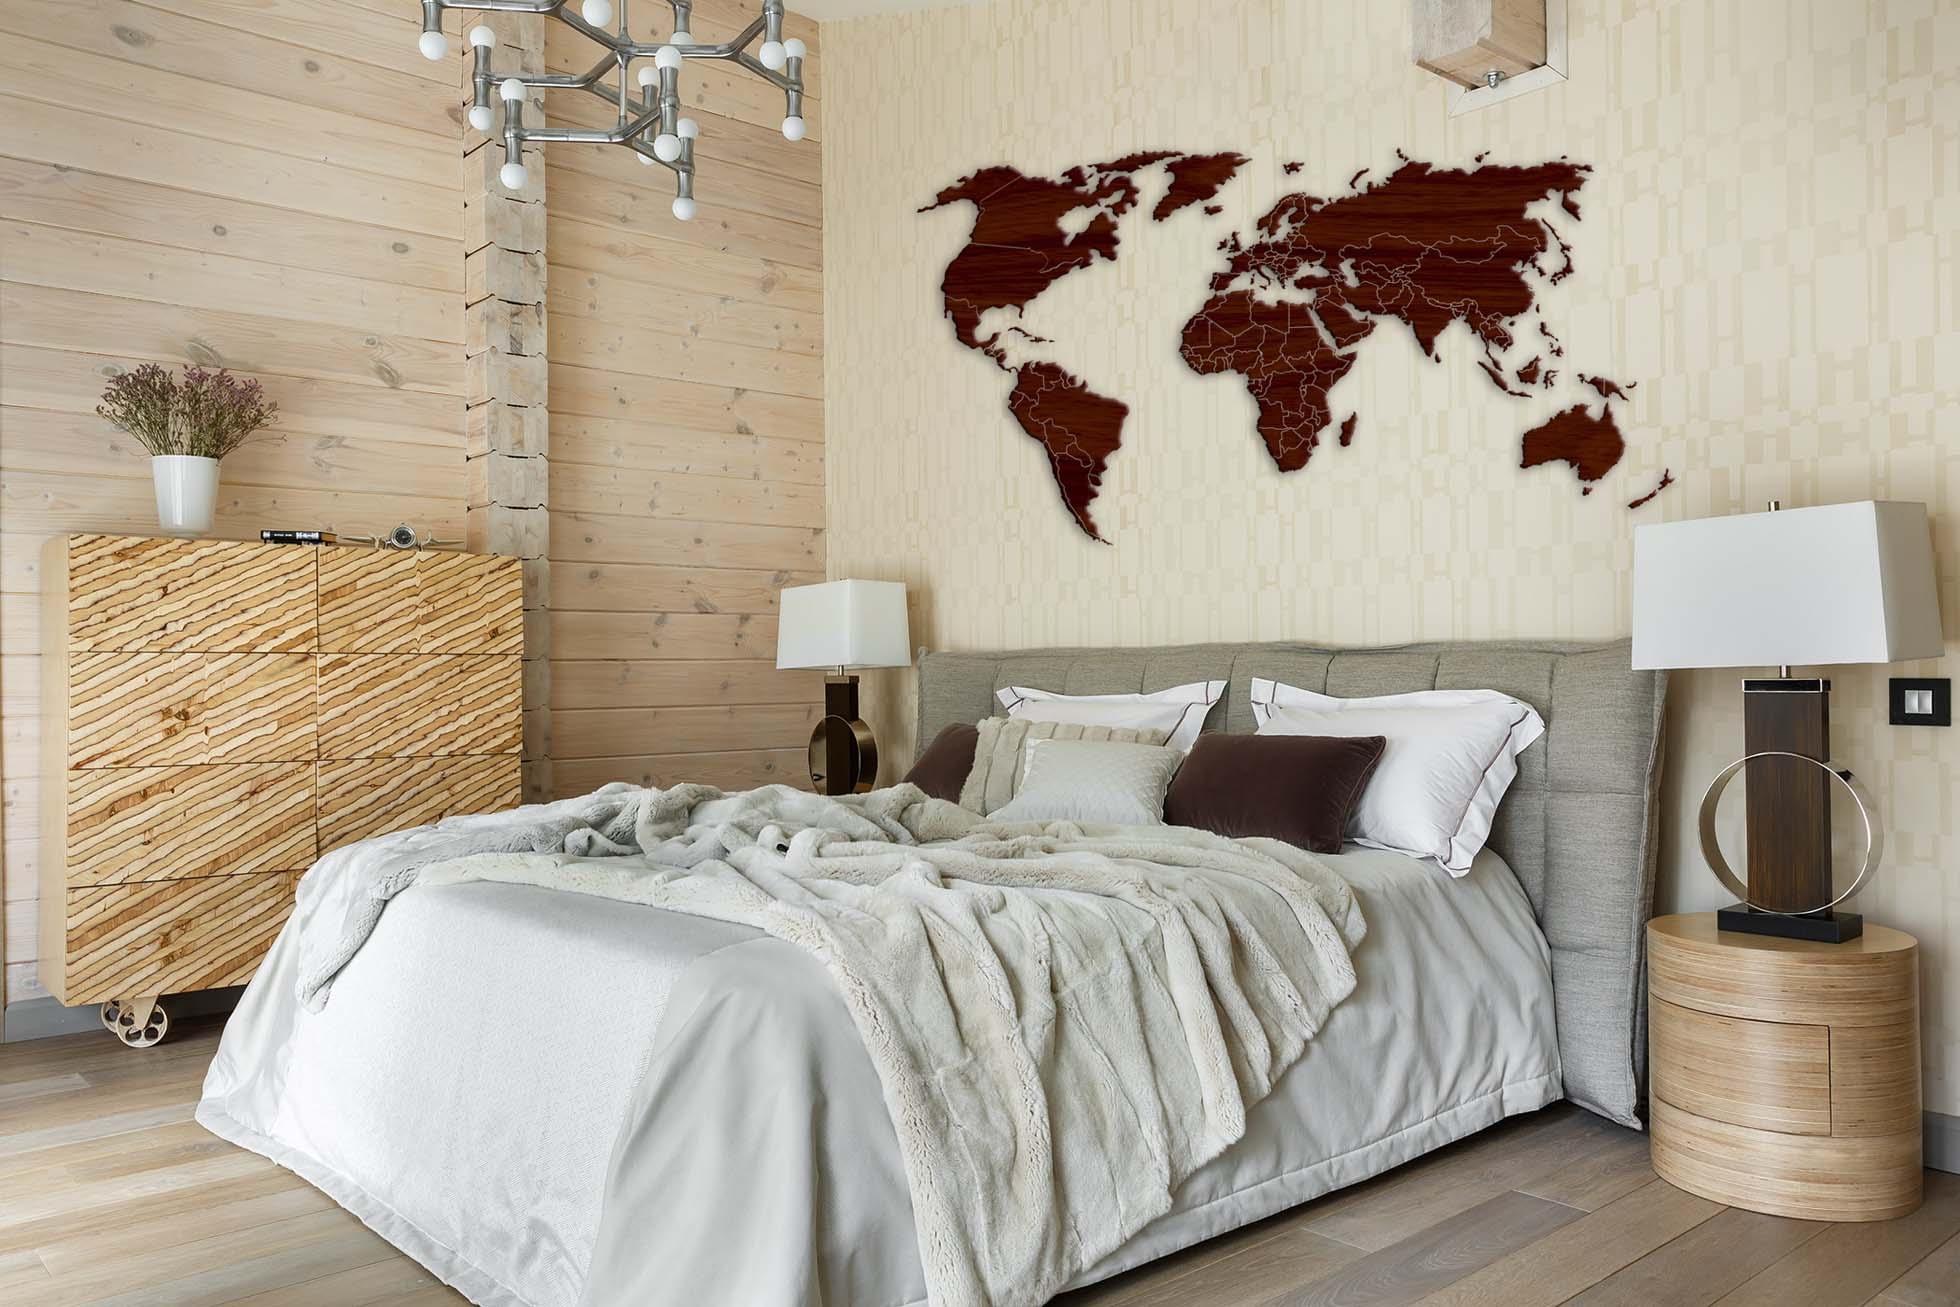 Над кроватью карта мира